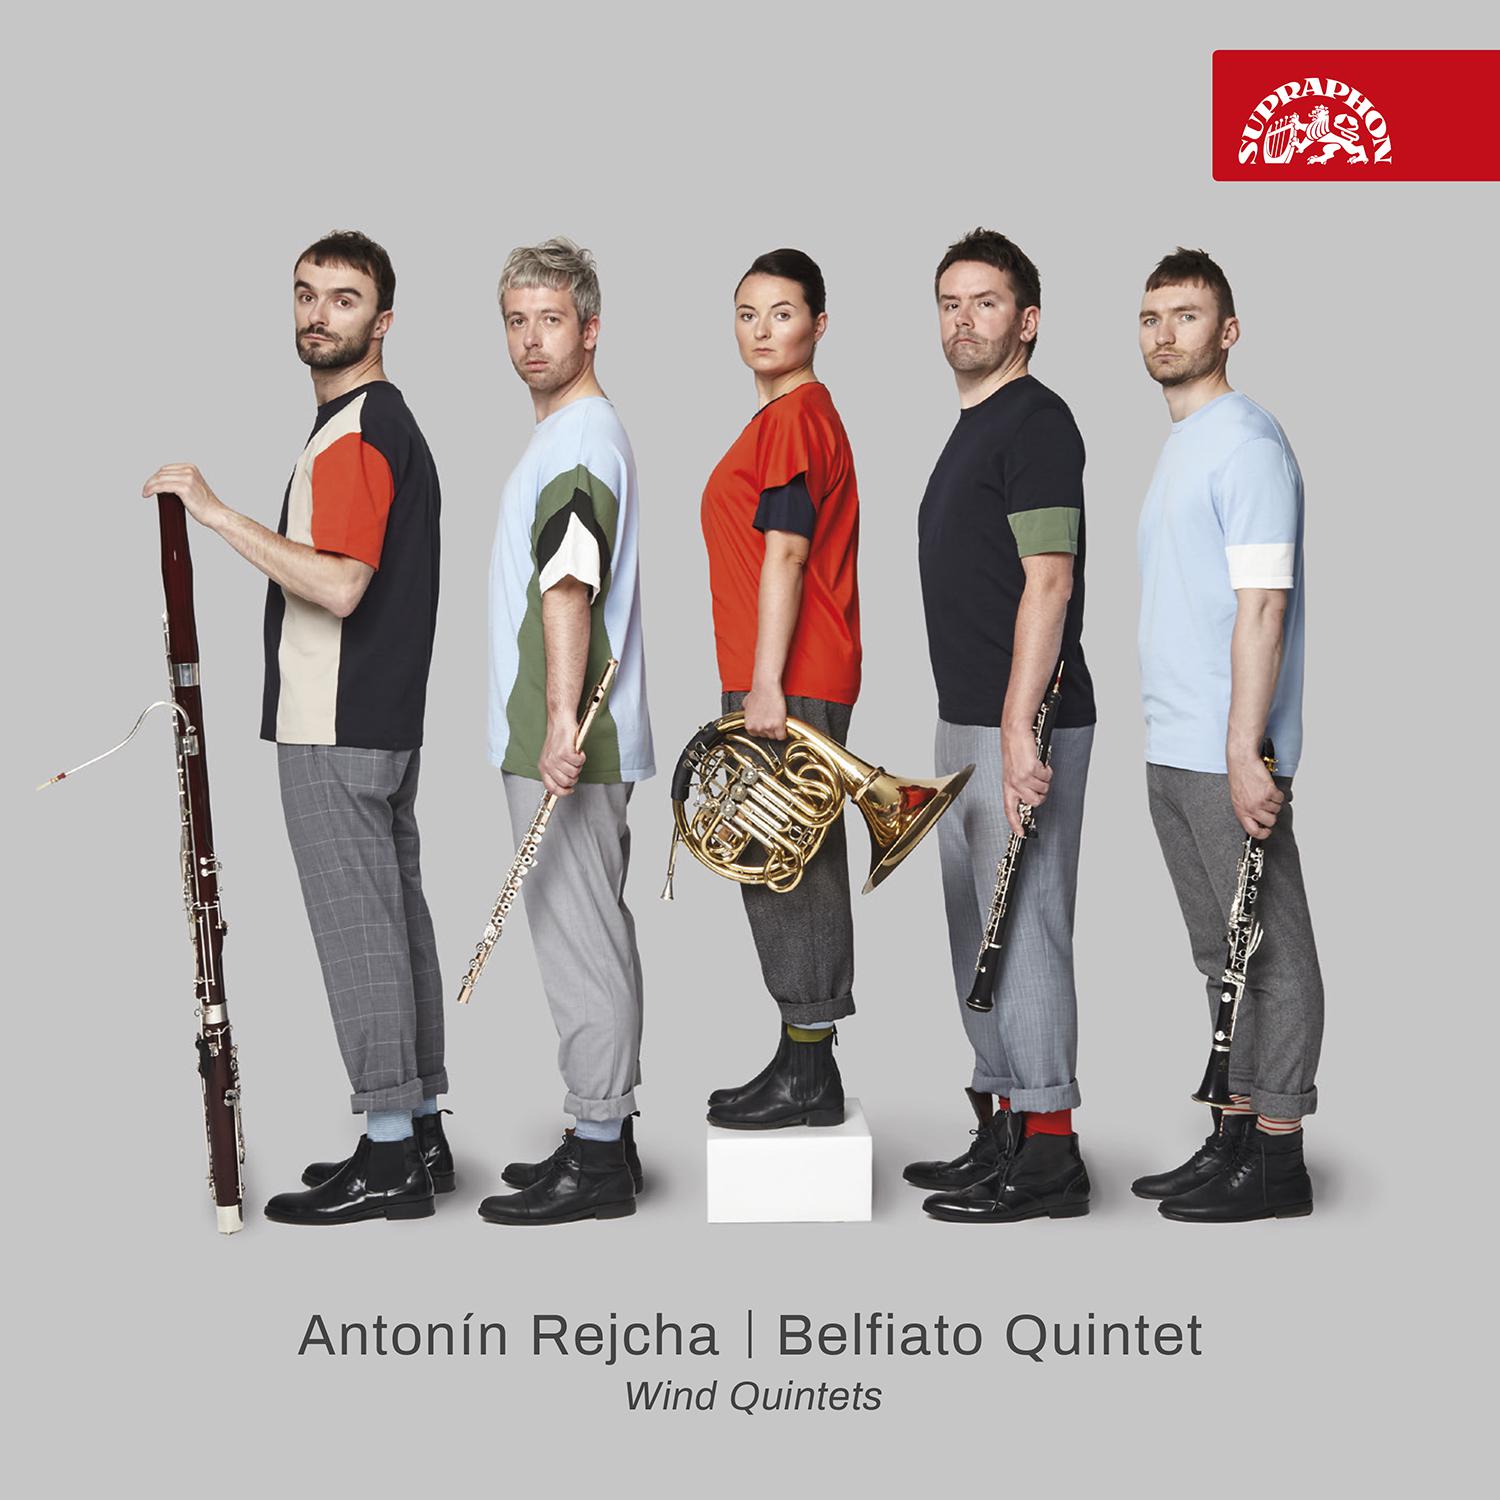 Belfiato Quintet - Wind Quintet in E Minor, Op. 88 No. 1:No. 1, Introduction. Andante - Allegro, ma non troppo